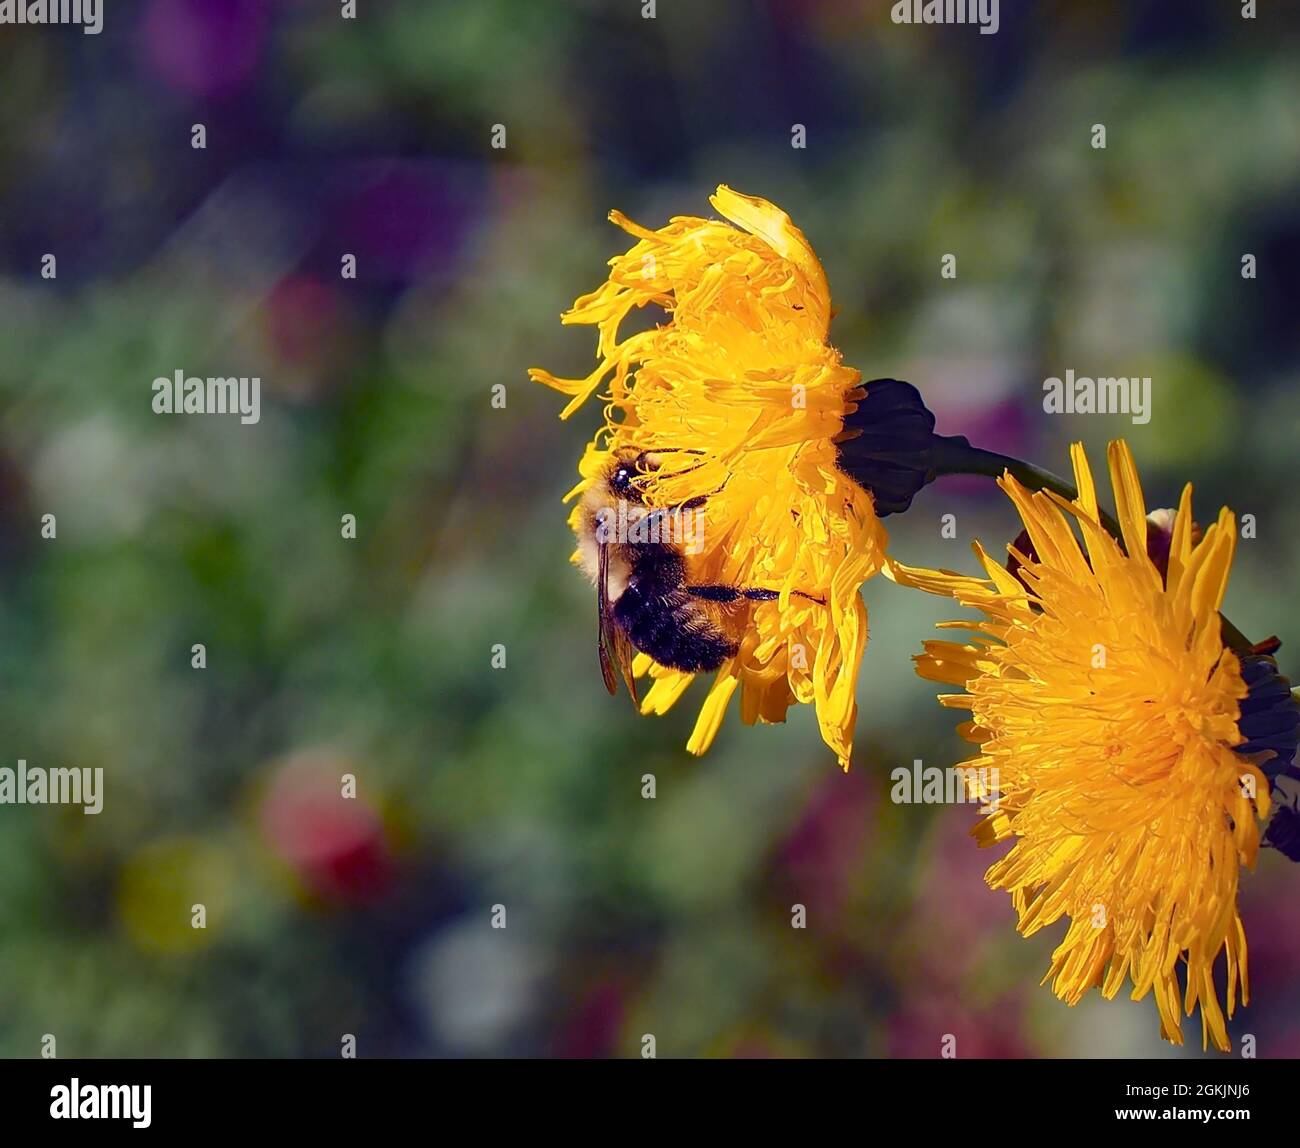 OLYMPUS FOTOCAMERA DIGITALE - primo piano di un bumblebee raccolta nettare dal fiore giallo su una pianta semovente-thistle che cresce in un prato. Foto Stock